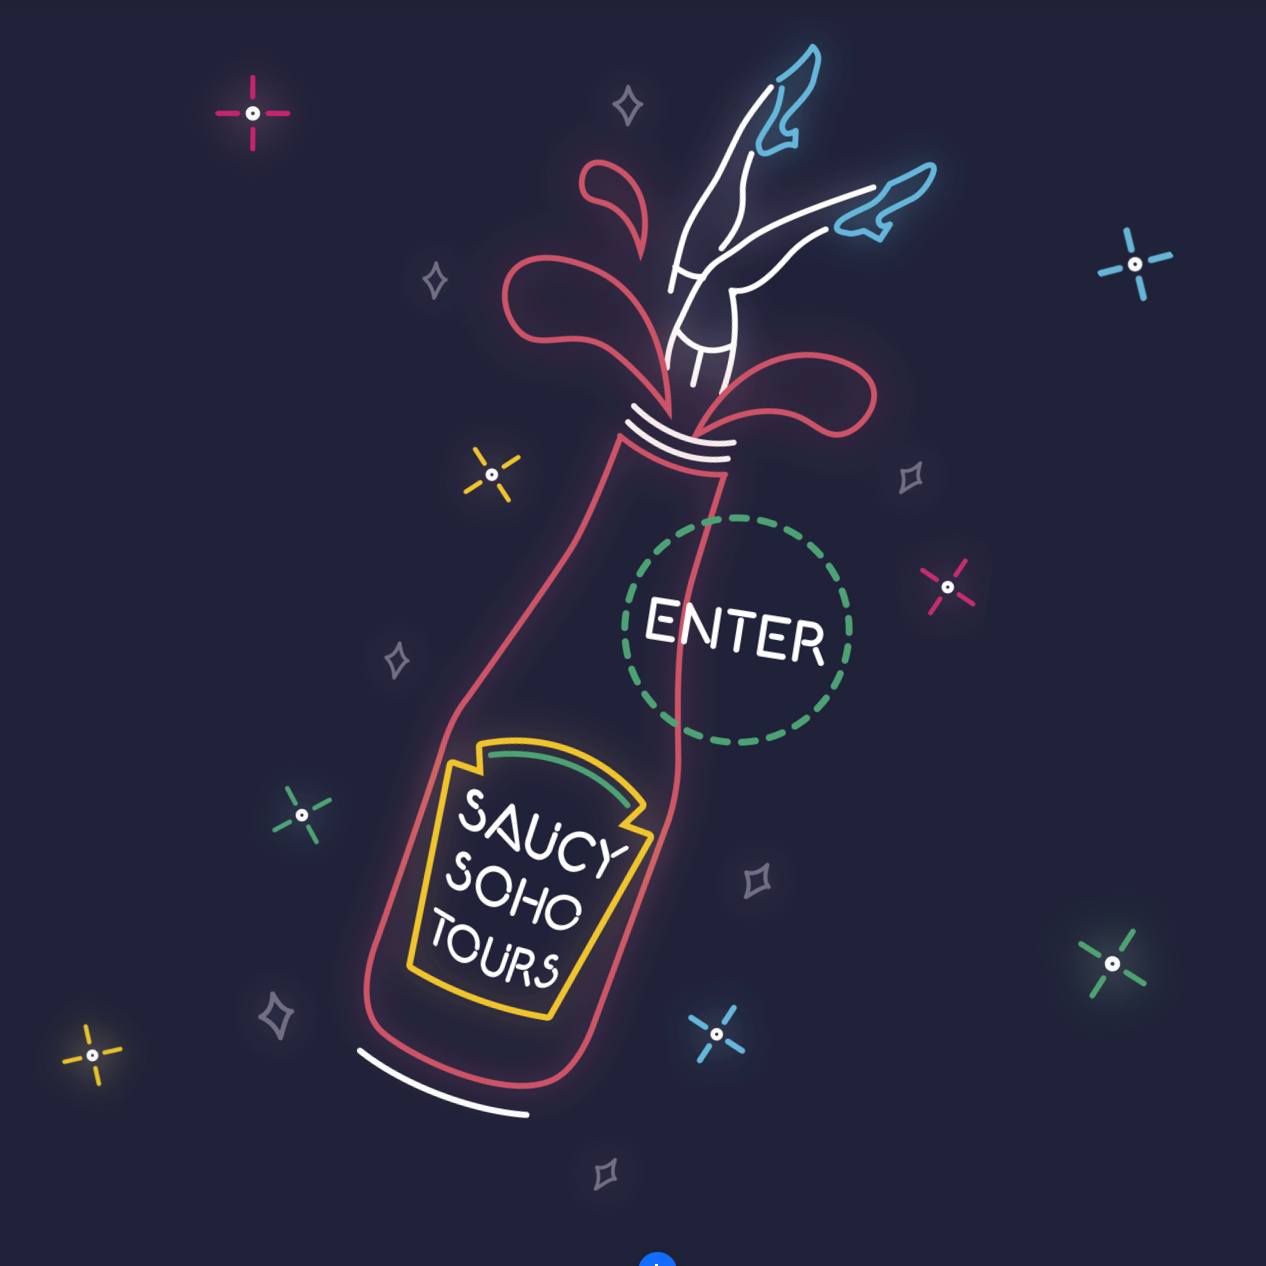 Saucy Soho Tours Logo